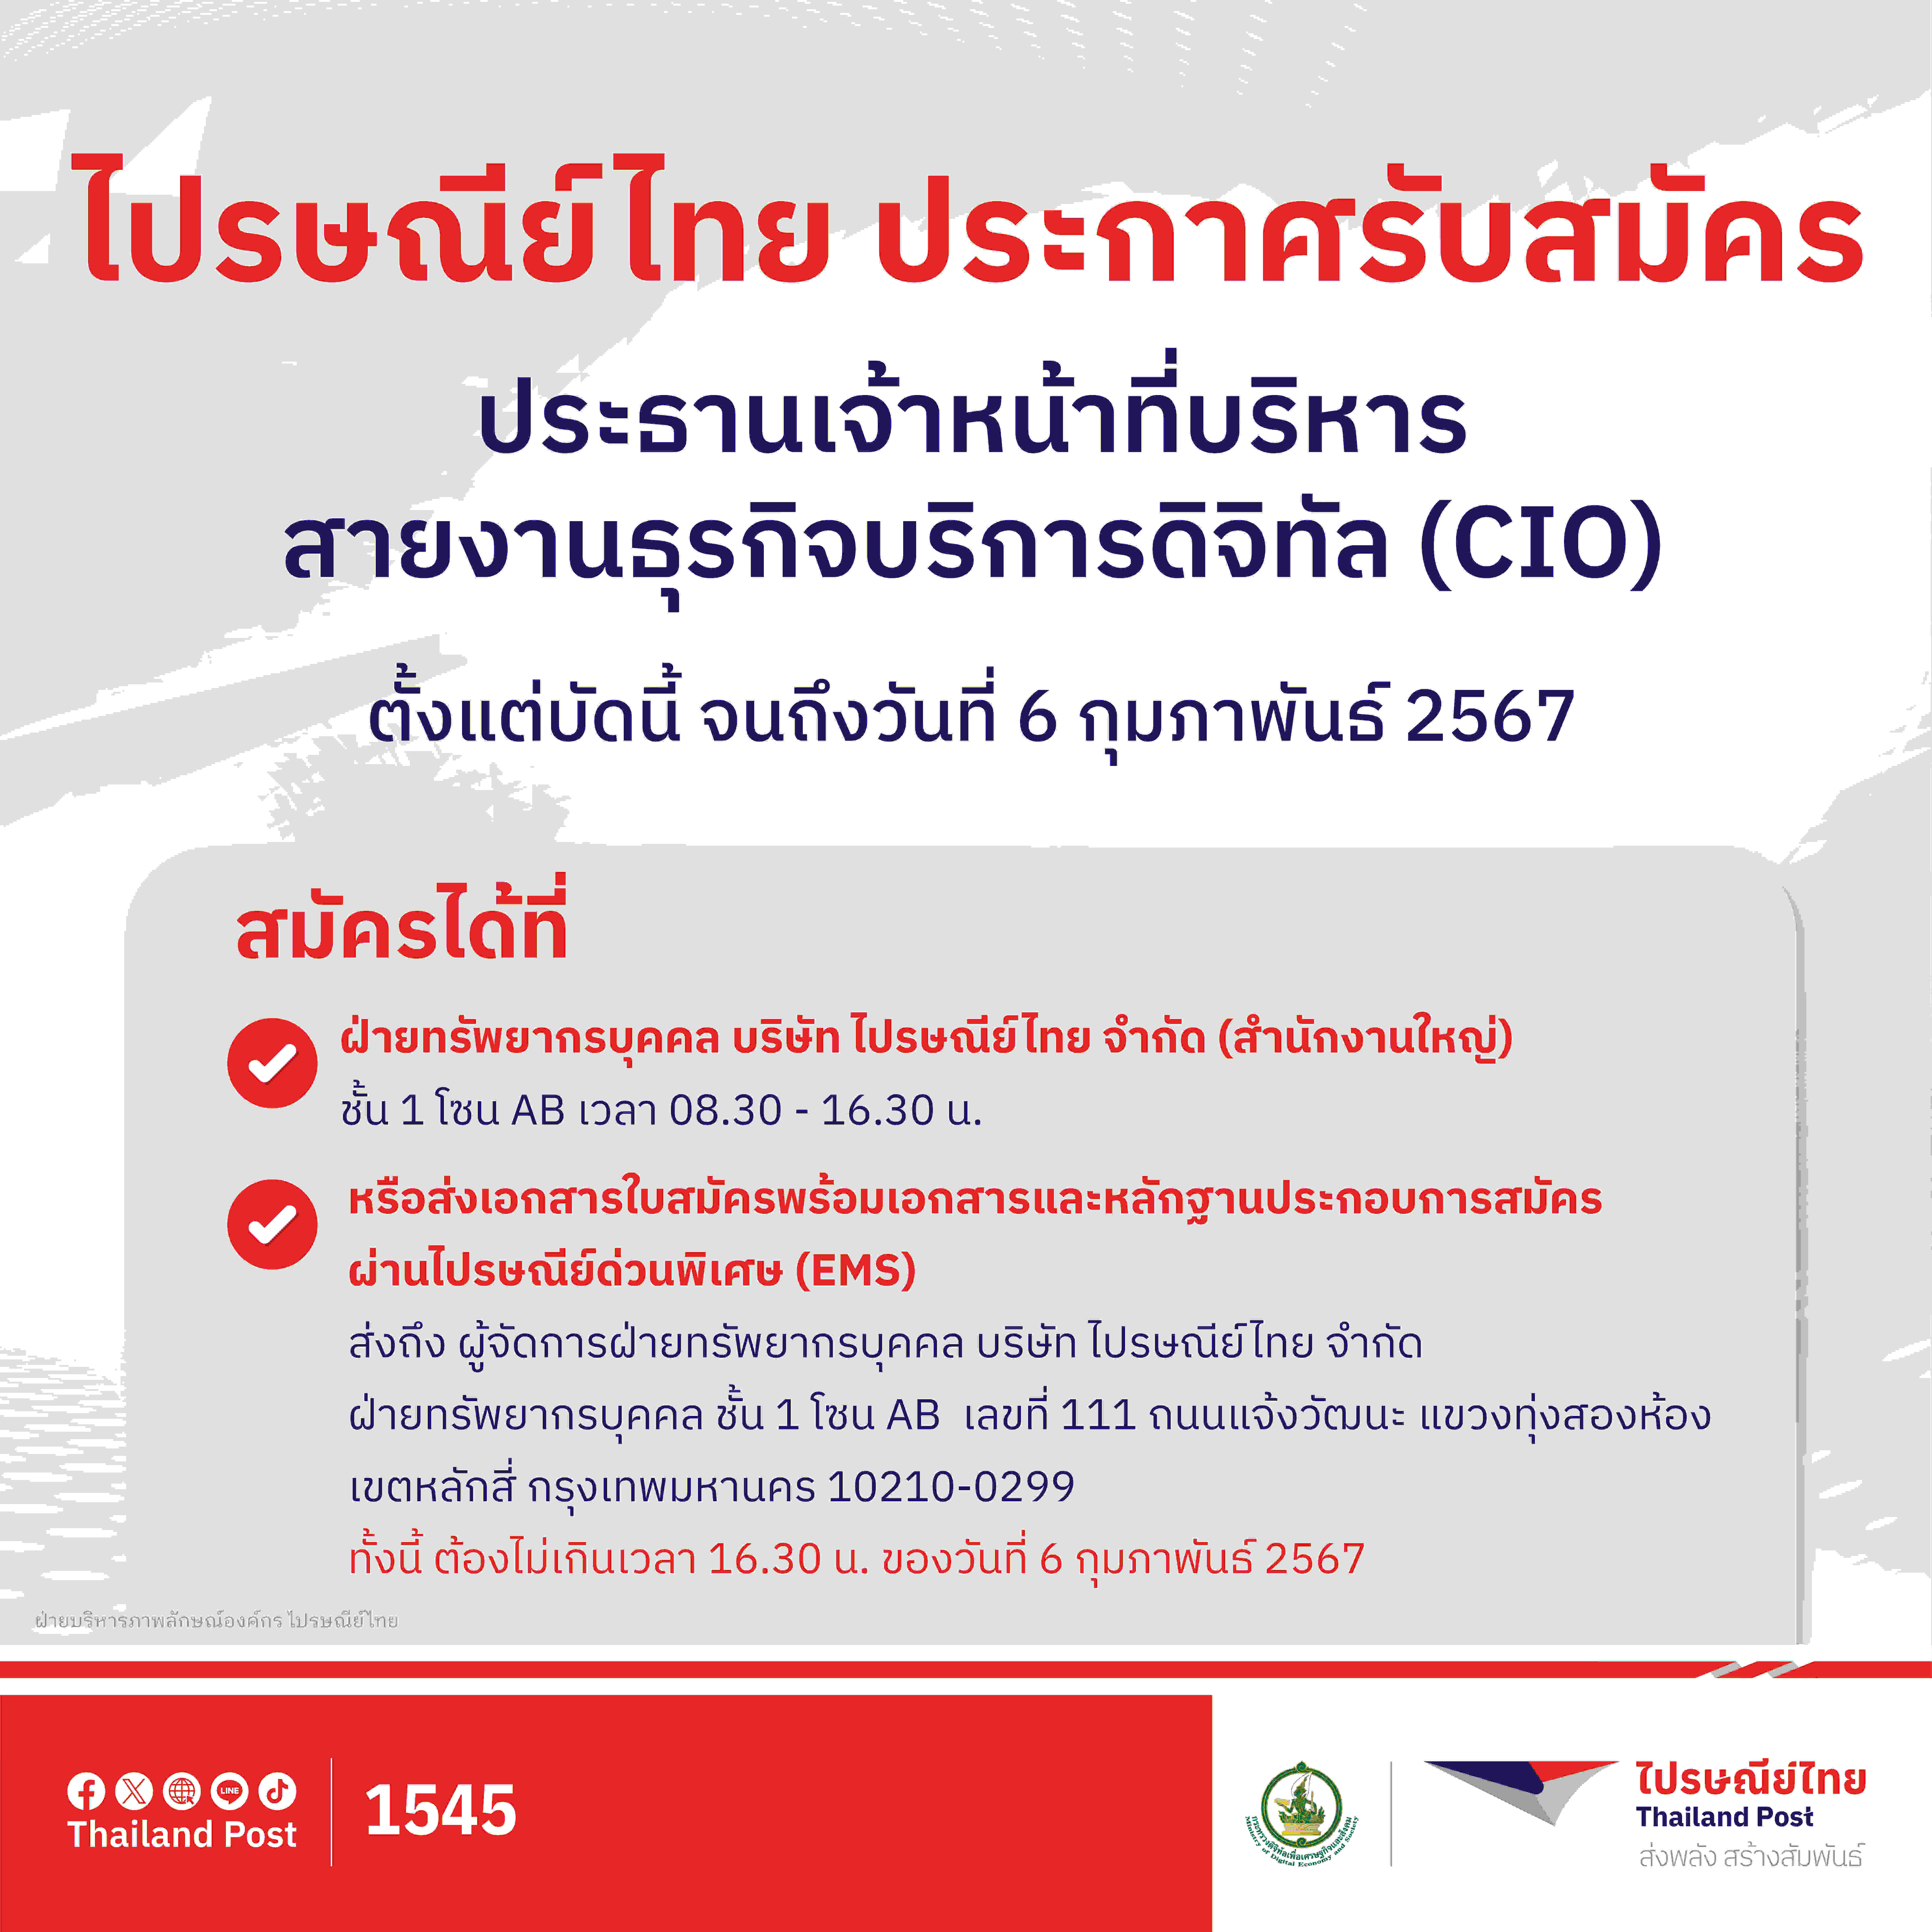 ไปรษณีย์ไทย เปิดรับสมัคร ประธานเจ้าหน้าที่บริหารสายงานธุรกิจบริการดิจิทัล (CIO) ตั้งแต่วันนี้ จนถึงวันที่ 6 กุมภาพันธ์ 2567